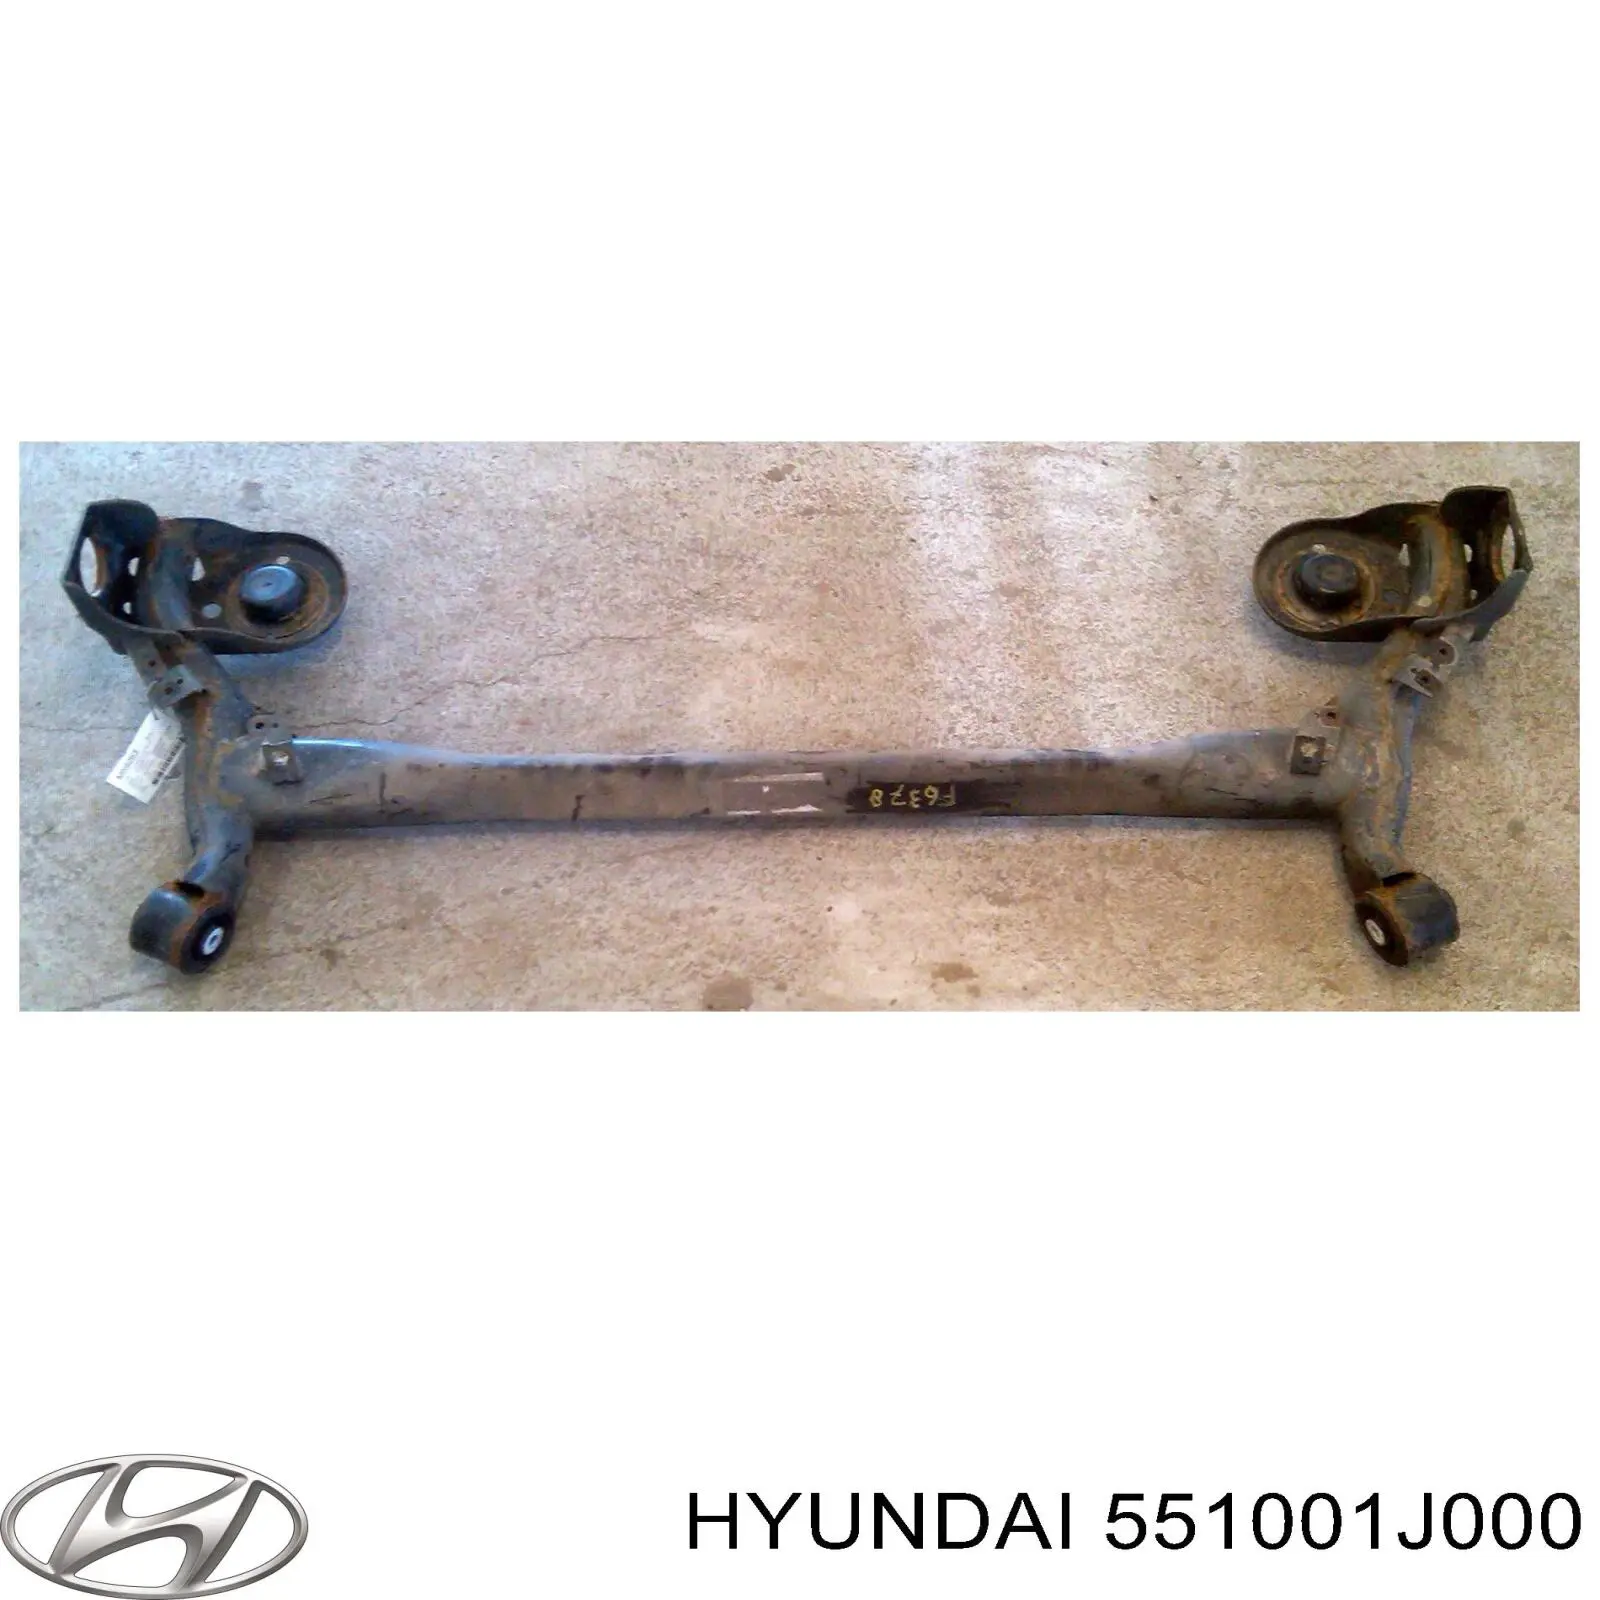 551001J000 Hyundai/Kia viga de suspensão traseira (plataforma veicular)